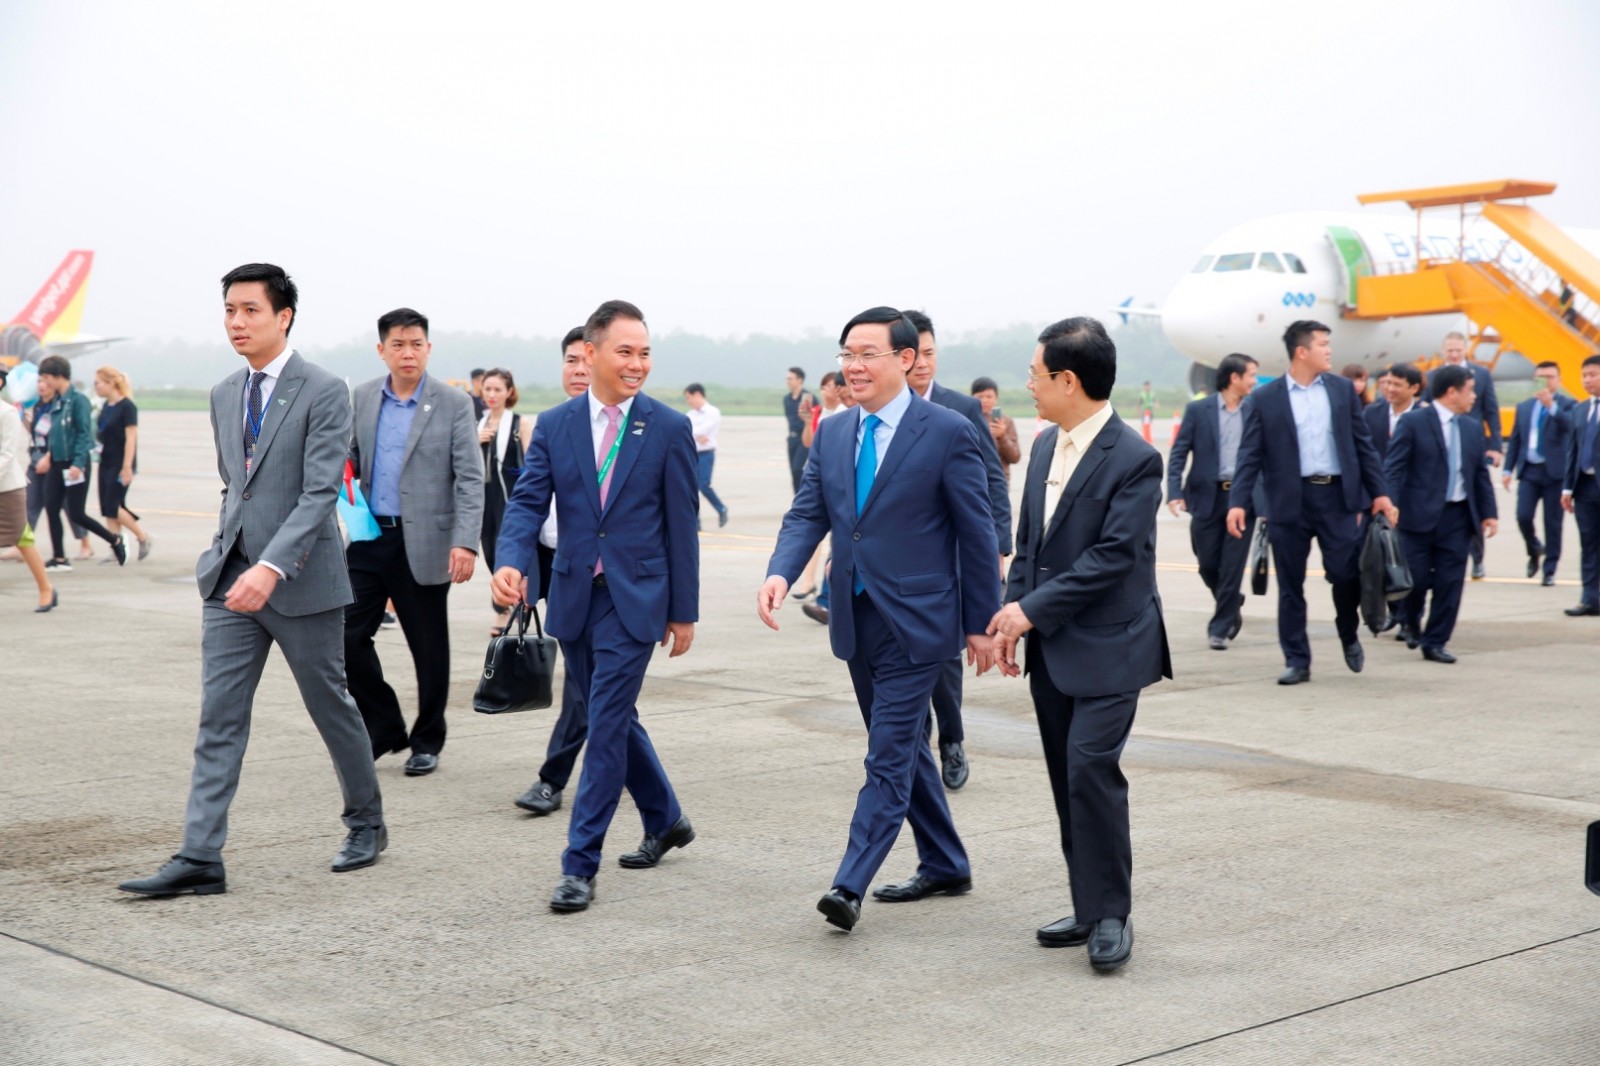 Phó Thủ tướng Chính phủ Vương Đình Huệ cùng nhiều lãnh đạo cấp cao đến Vinh trên chuyến bay mang mã số QH7653 của Bamboo Airways